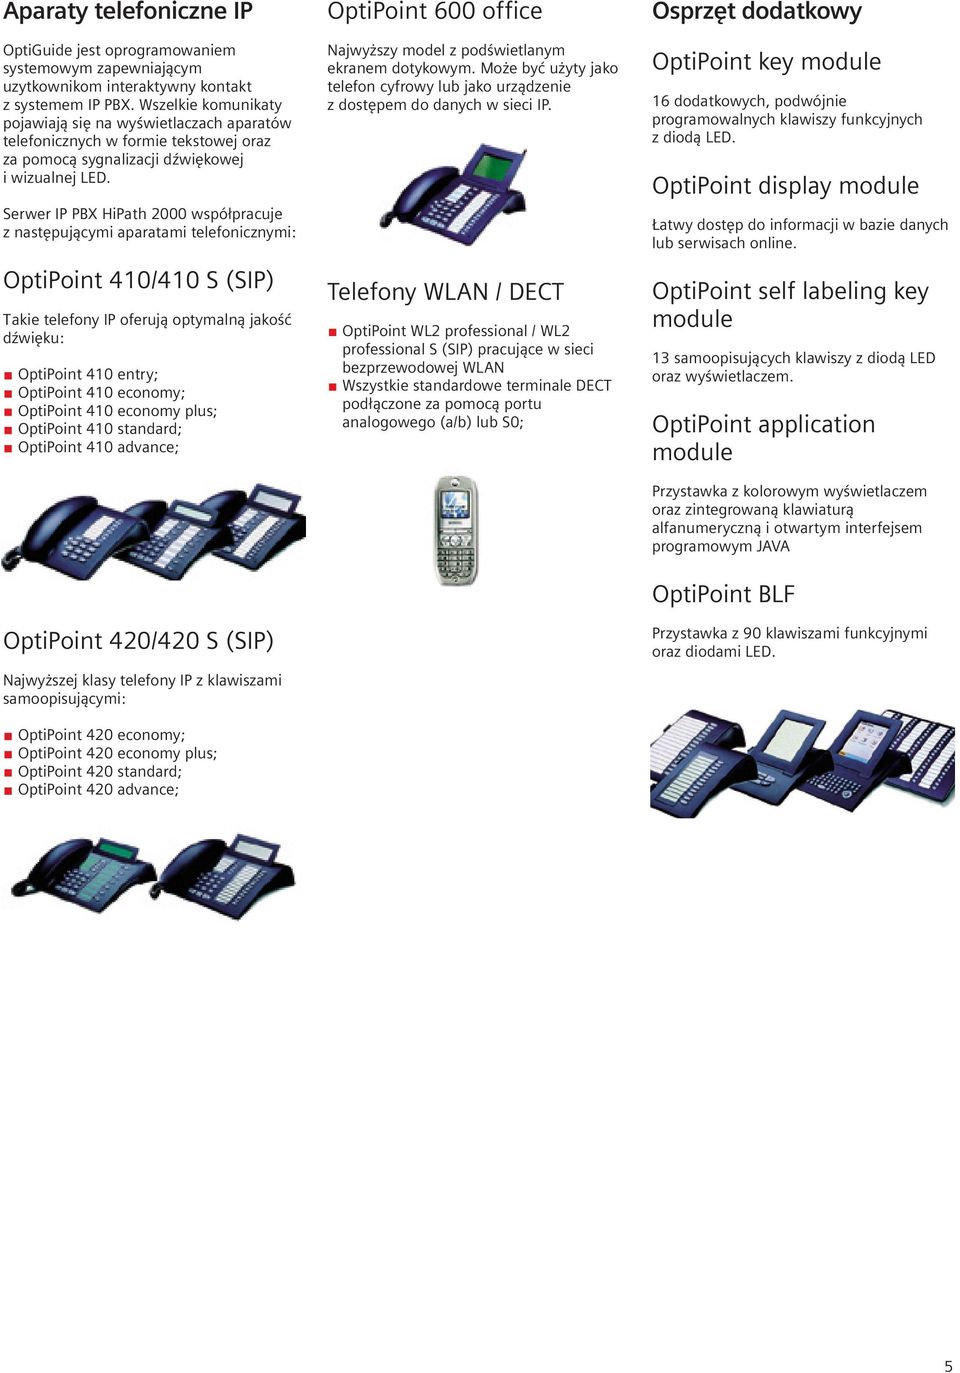 Serwer IP PBX HiPath 2000 współpracuje z następującymi aparatami telefonicznymi: OptiPoint 410/410 S (SIP) Takie telefony IP oferują optymalną jakość dźwięku: OptiPoint 410 entry; OptiPoint 410